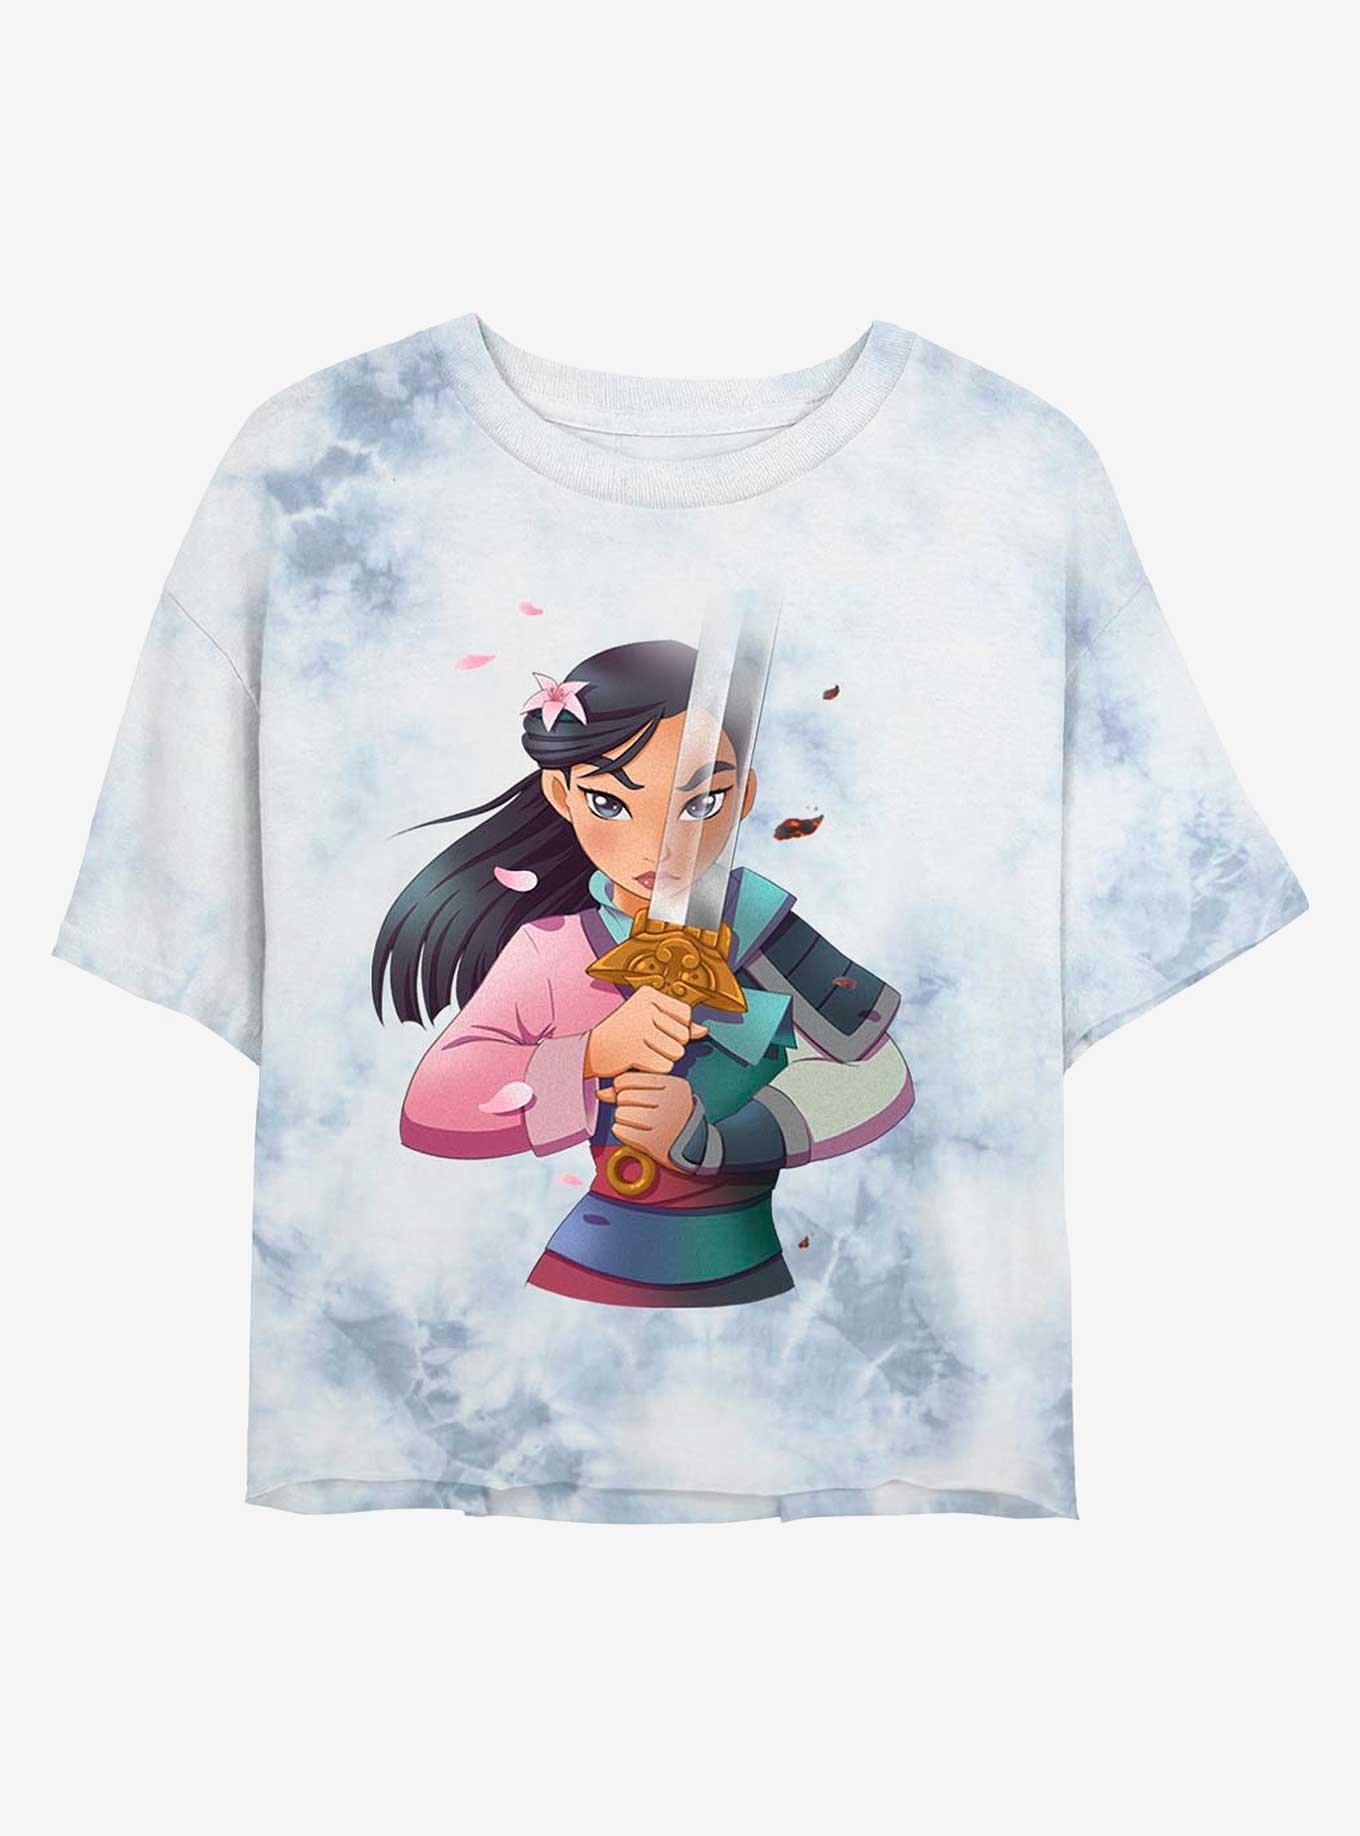 Disney Mulan Warrior Princess Tie-Dye Girls Crop T-Shirt - MULTI